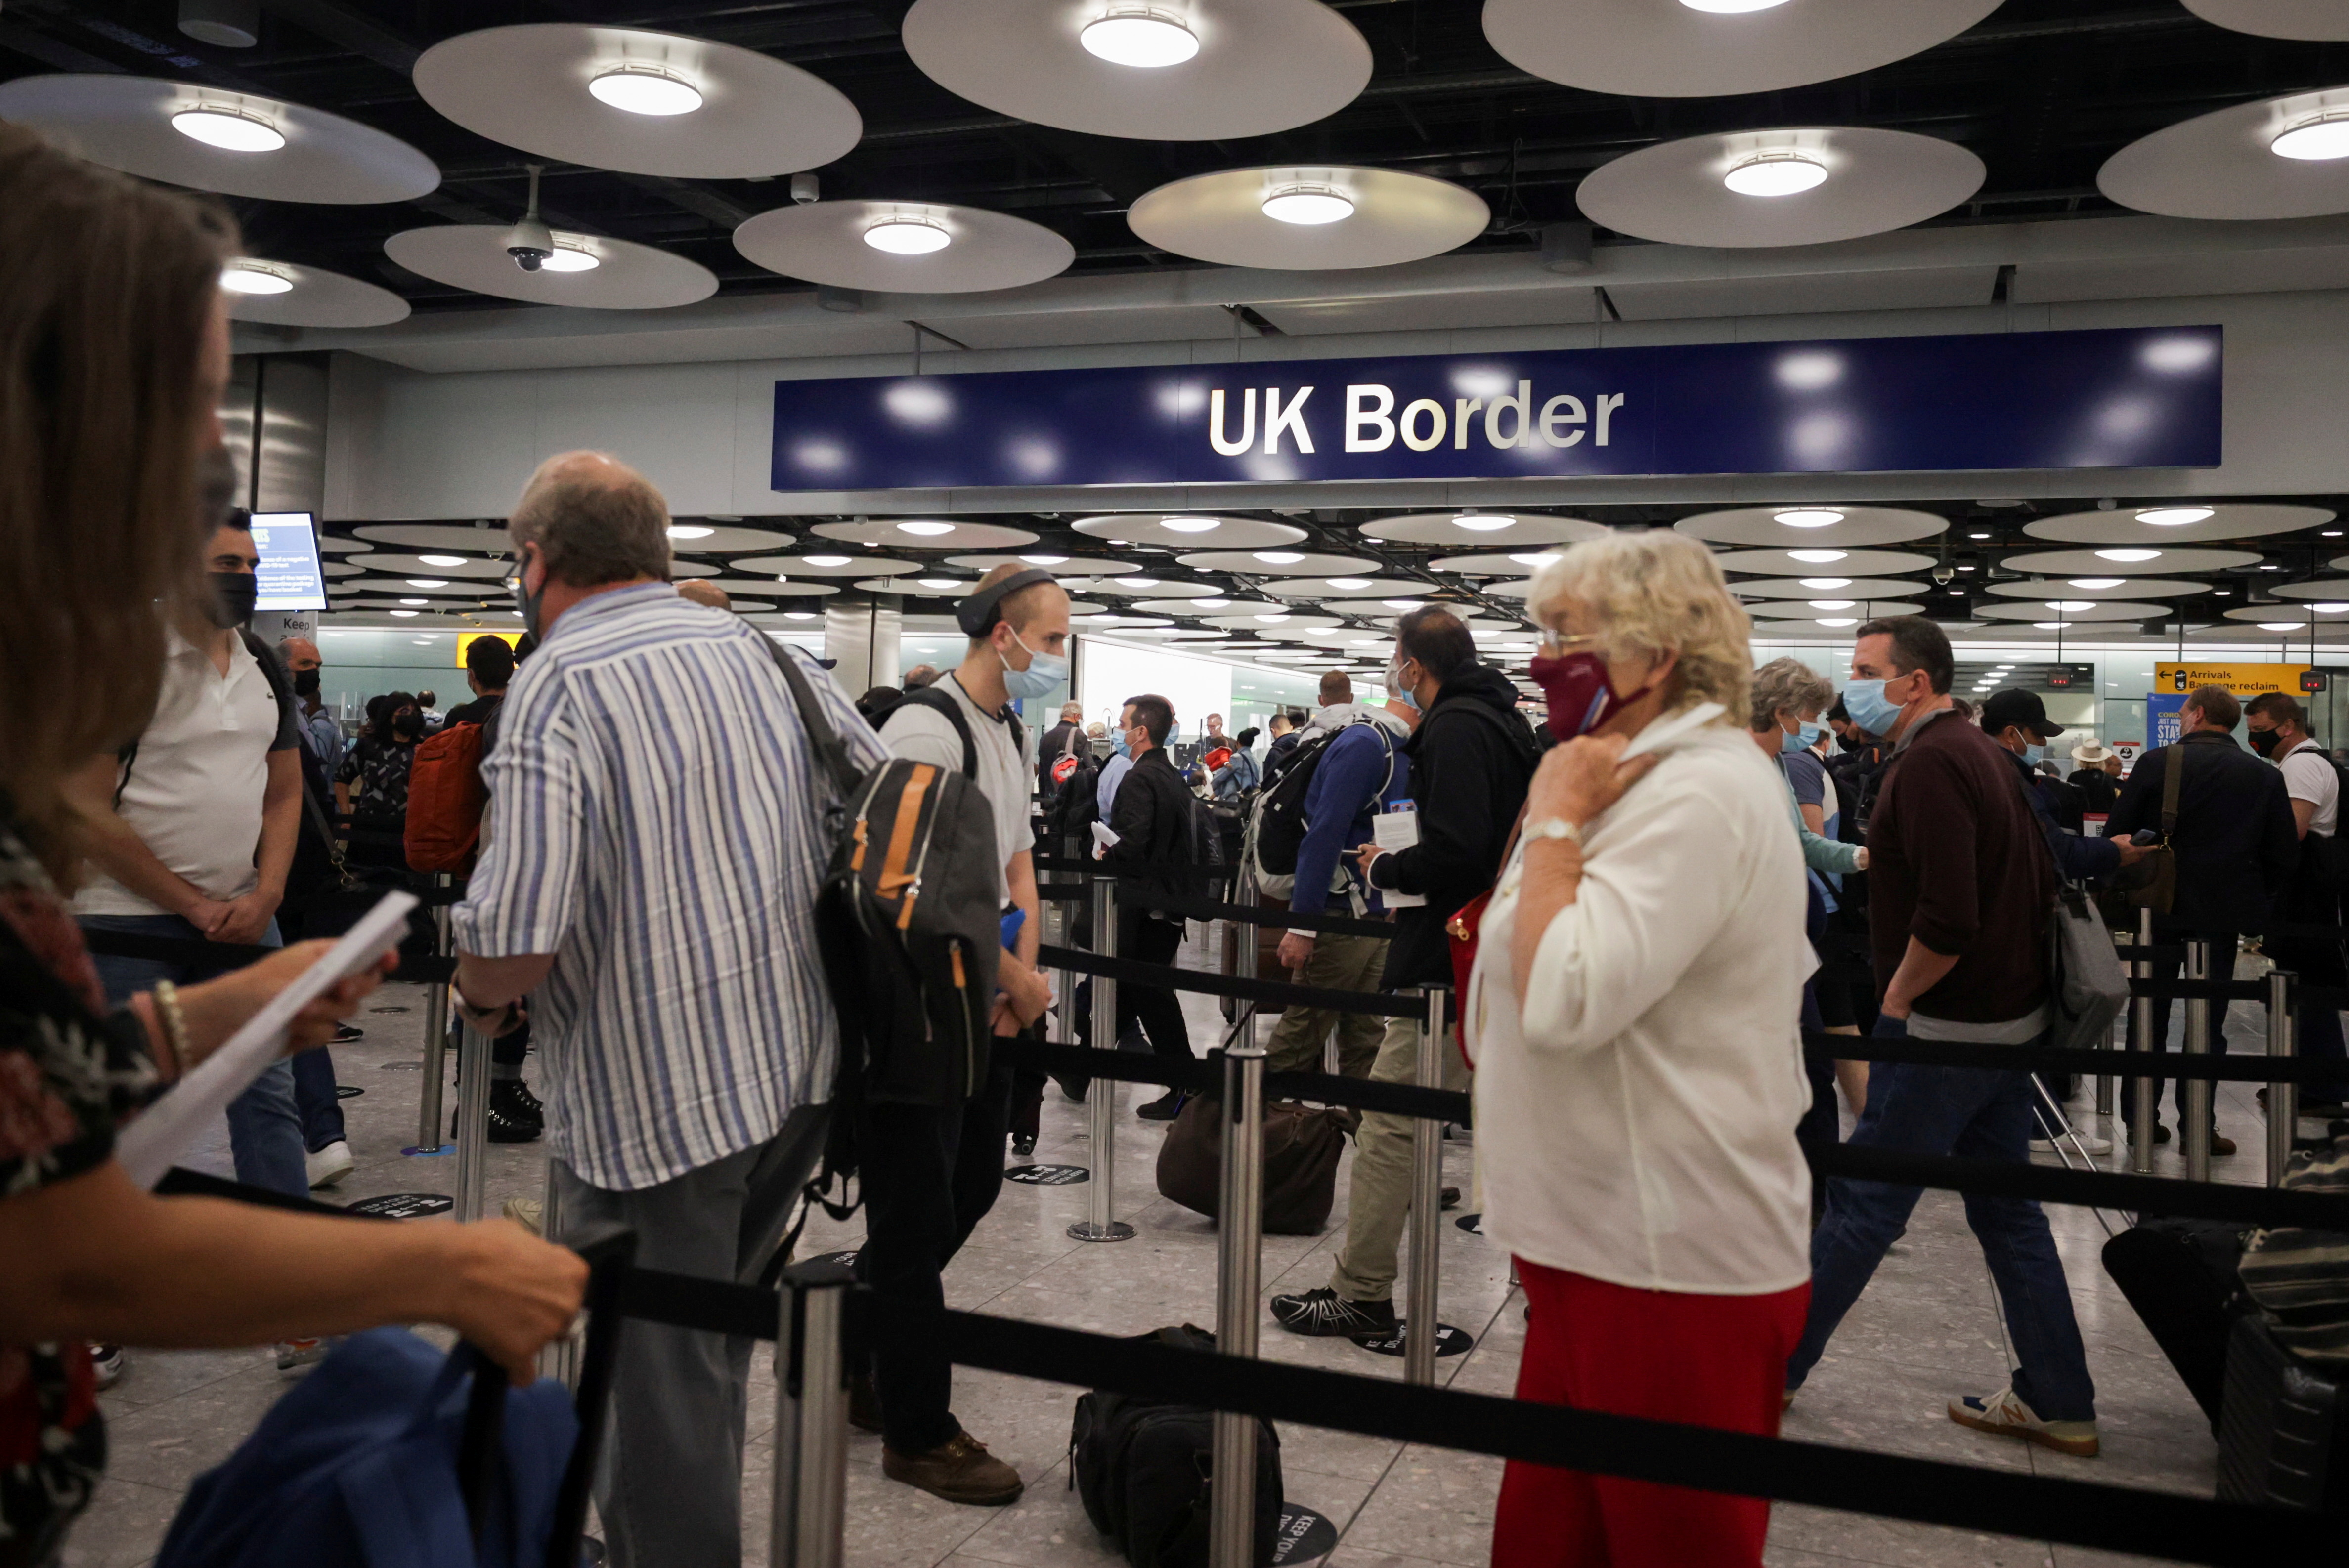 Pasajeros arriban al control fronterizo en la Terminal 5 del aeropuerto de Heathrow (REUTERS/Hannah Mckay)